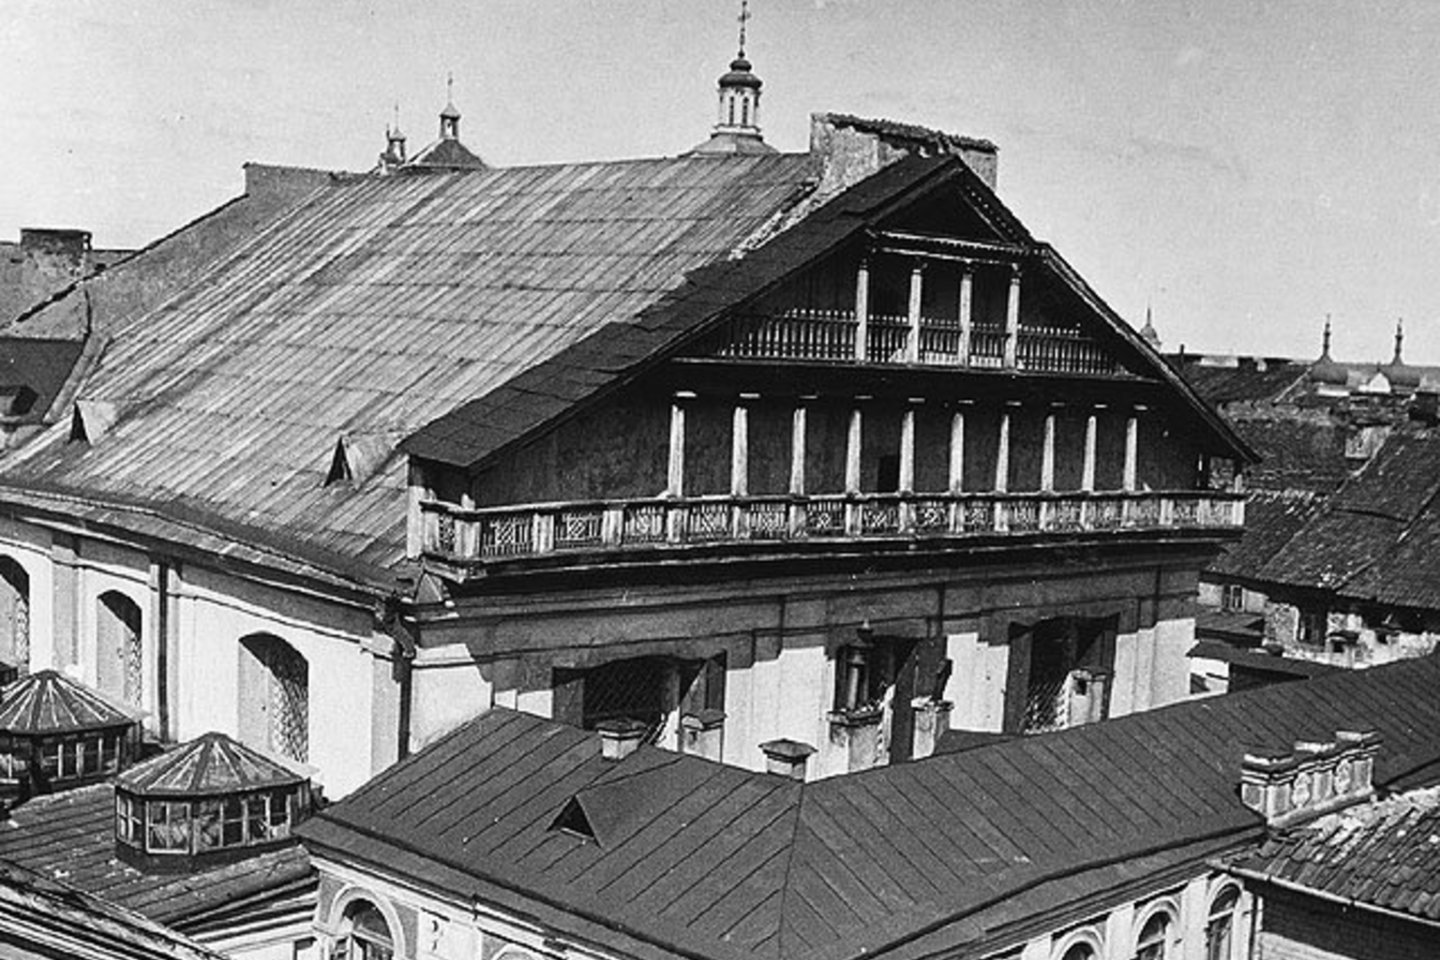  Didžioji Vilniaus sinagoga (1914-1918 m.).<br> Vikipedia nuotr.